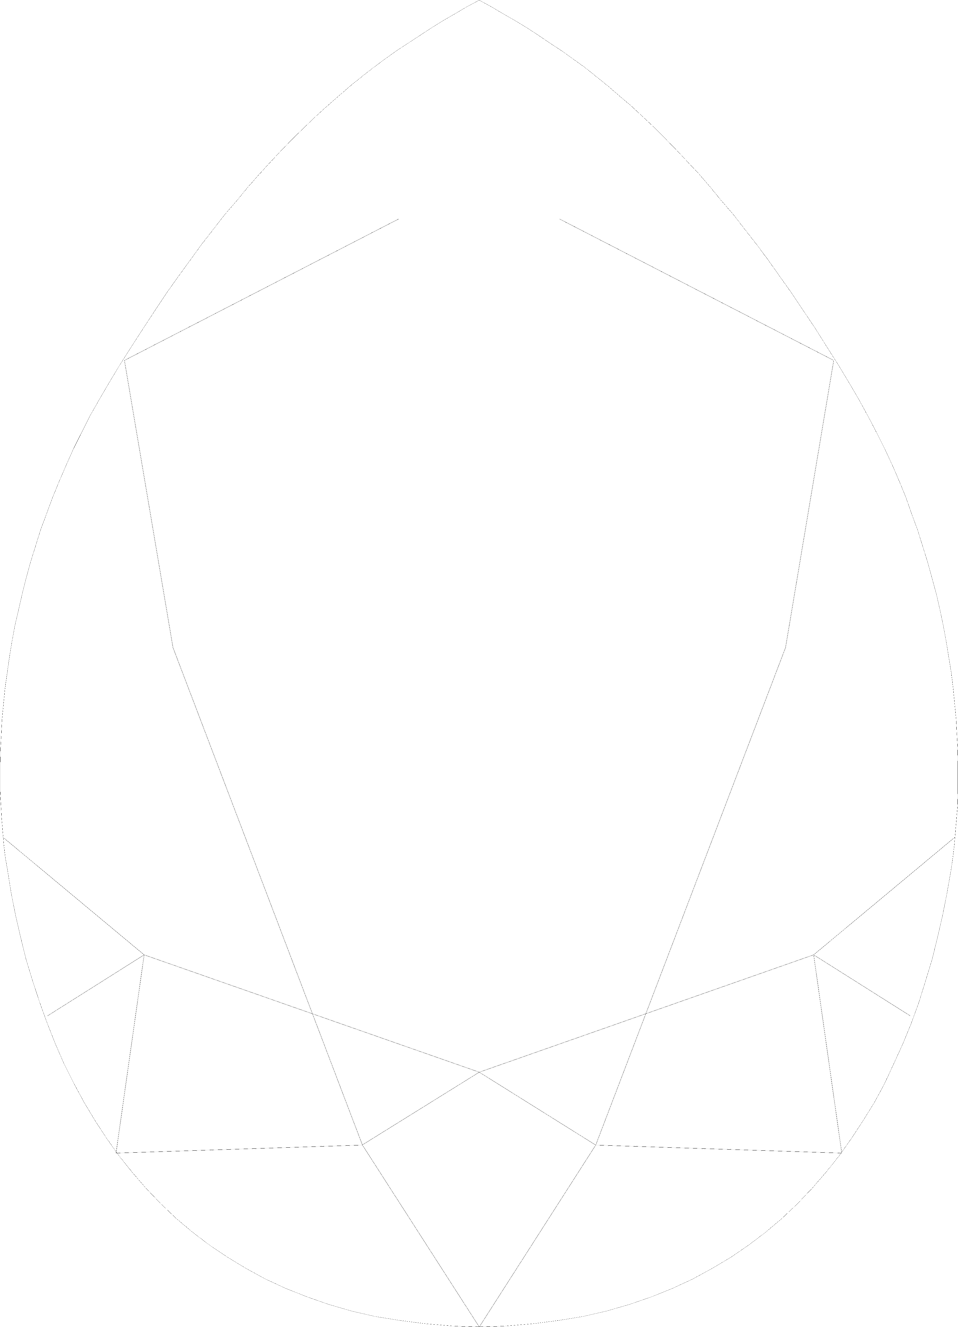 Gem free stock photo. Egg clipart egg shape